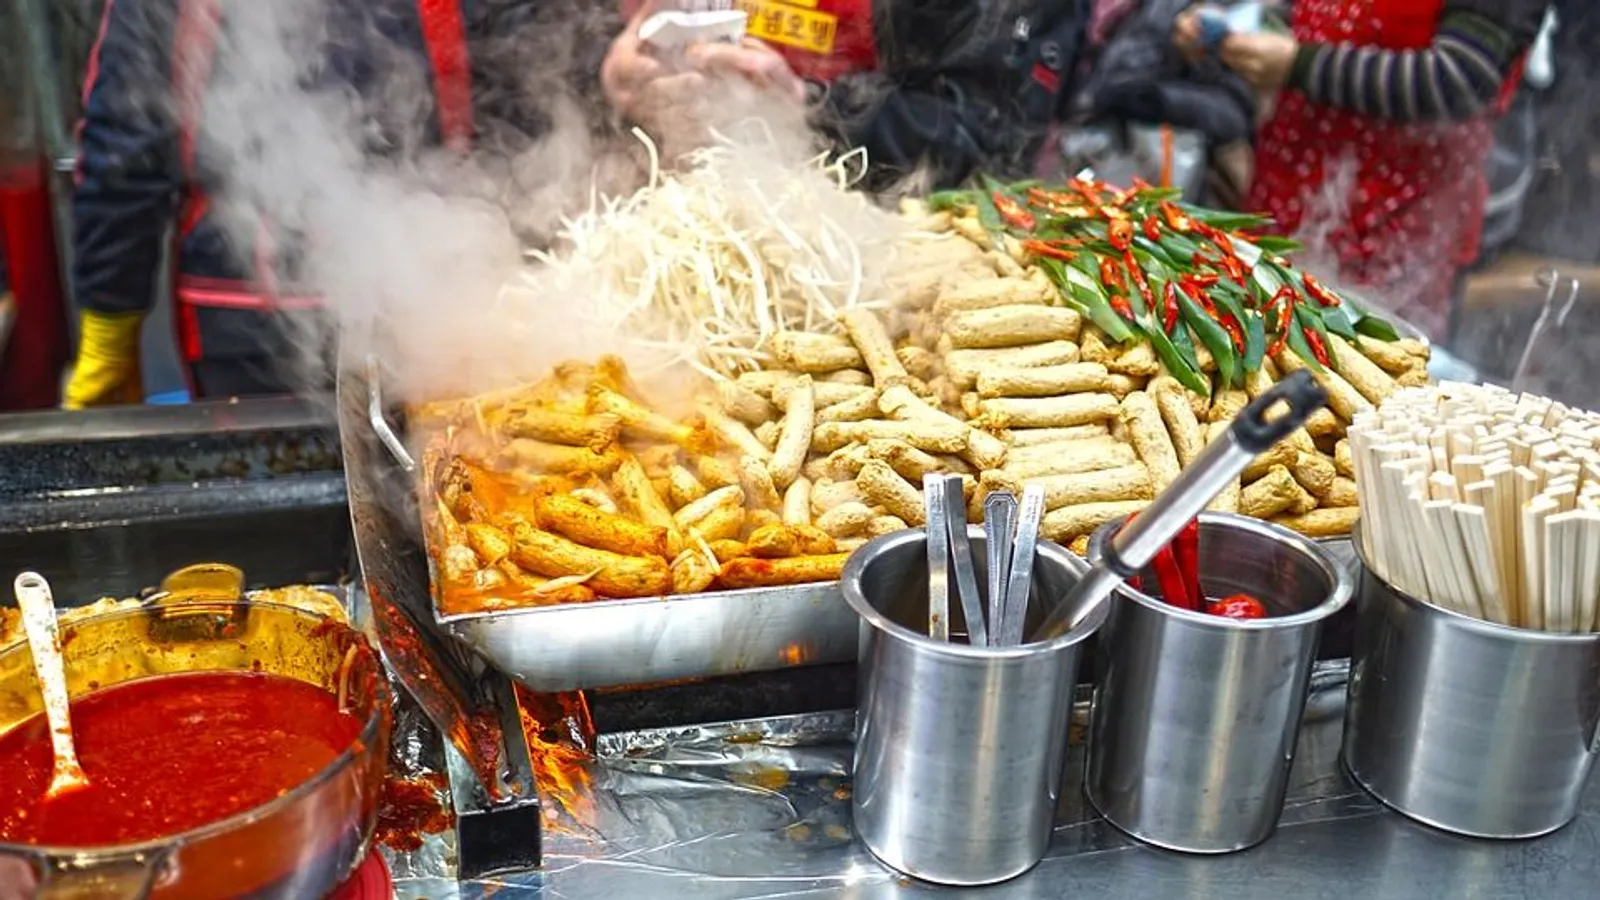 Beli Street Food di Jepang Nggak Boleh Makan Sambil Jalan